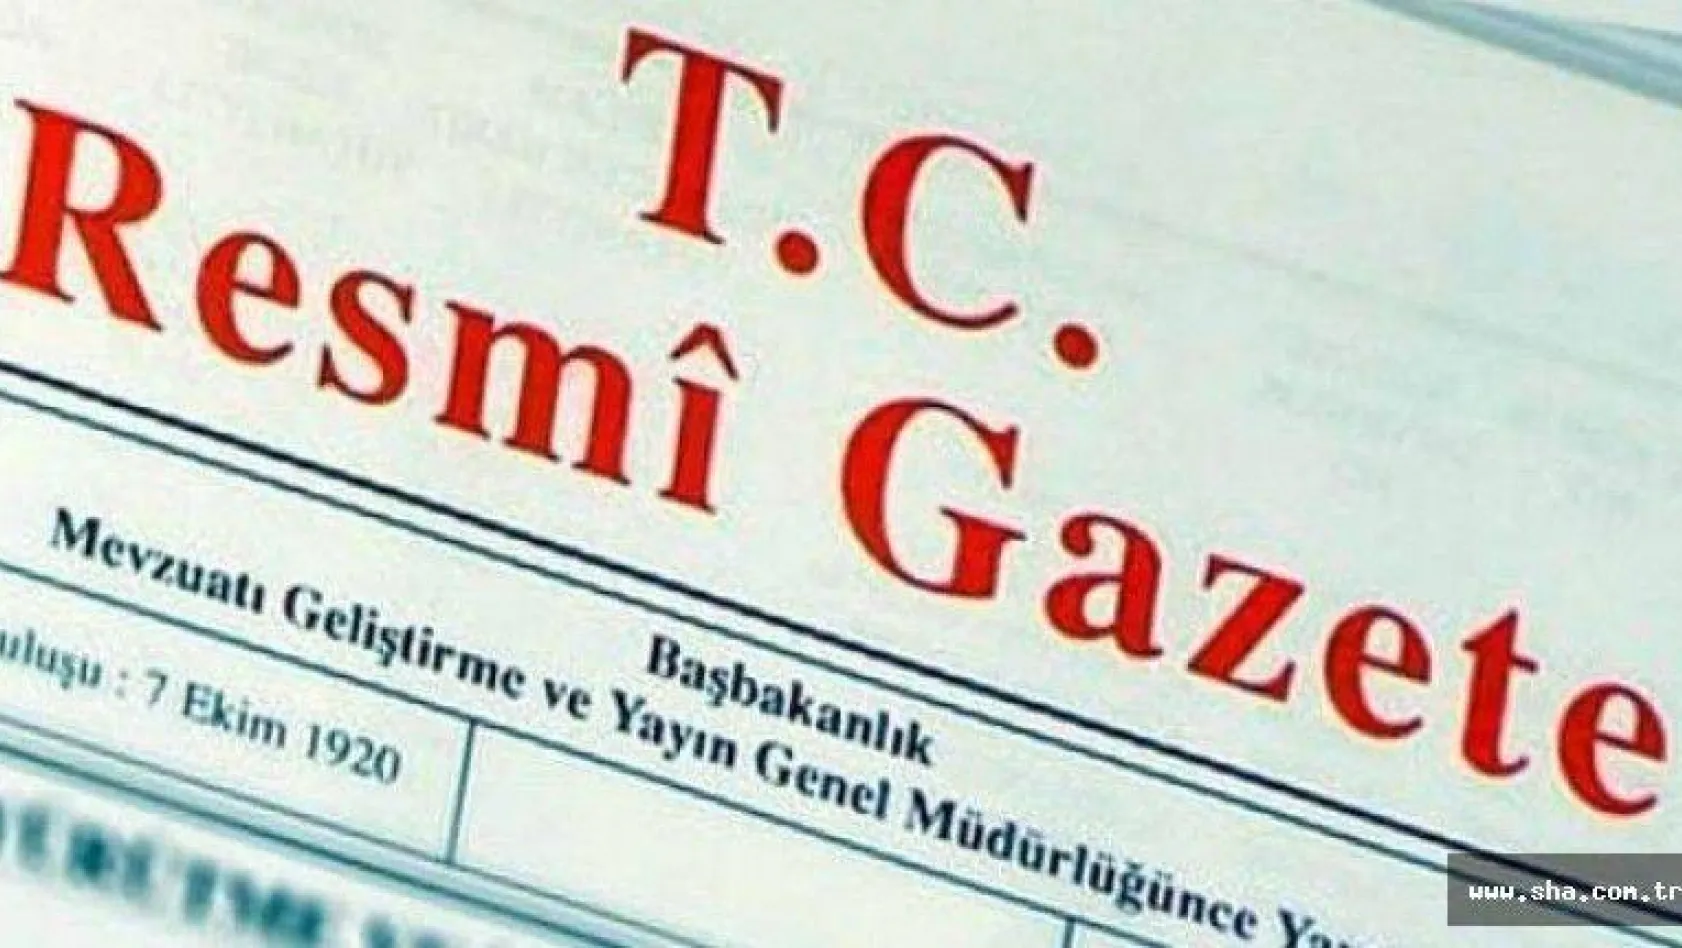 Cumhurbaşkanı Erdoğan'dan bürokrasiye yönelik genelge